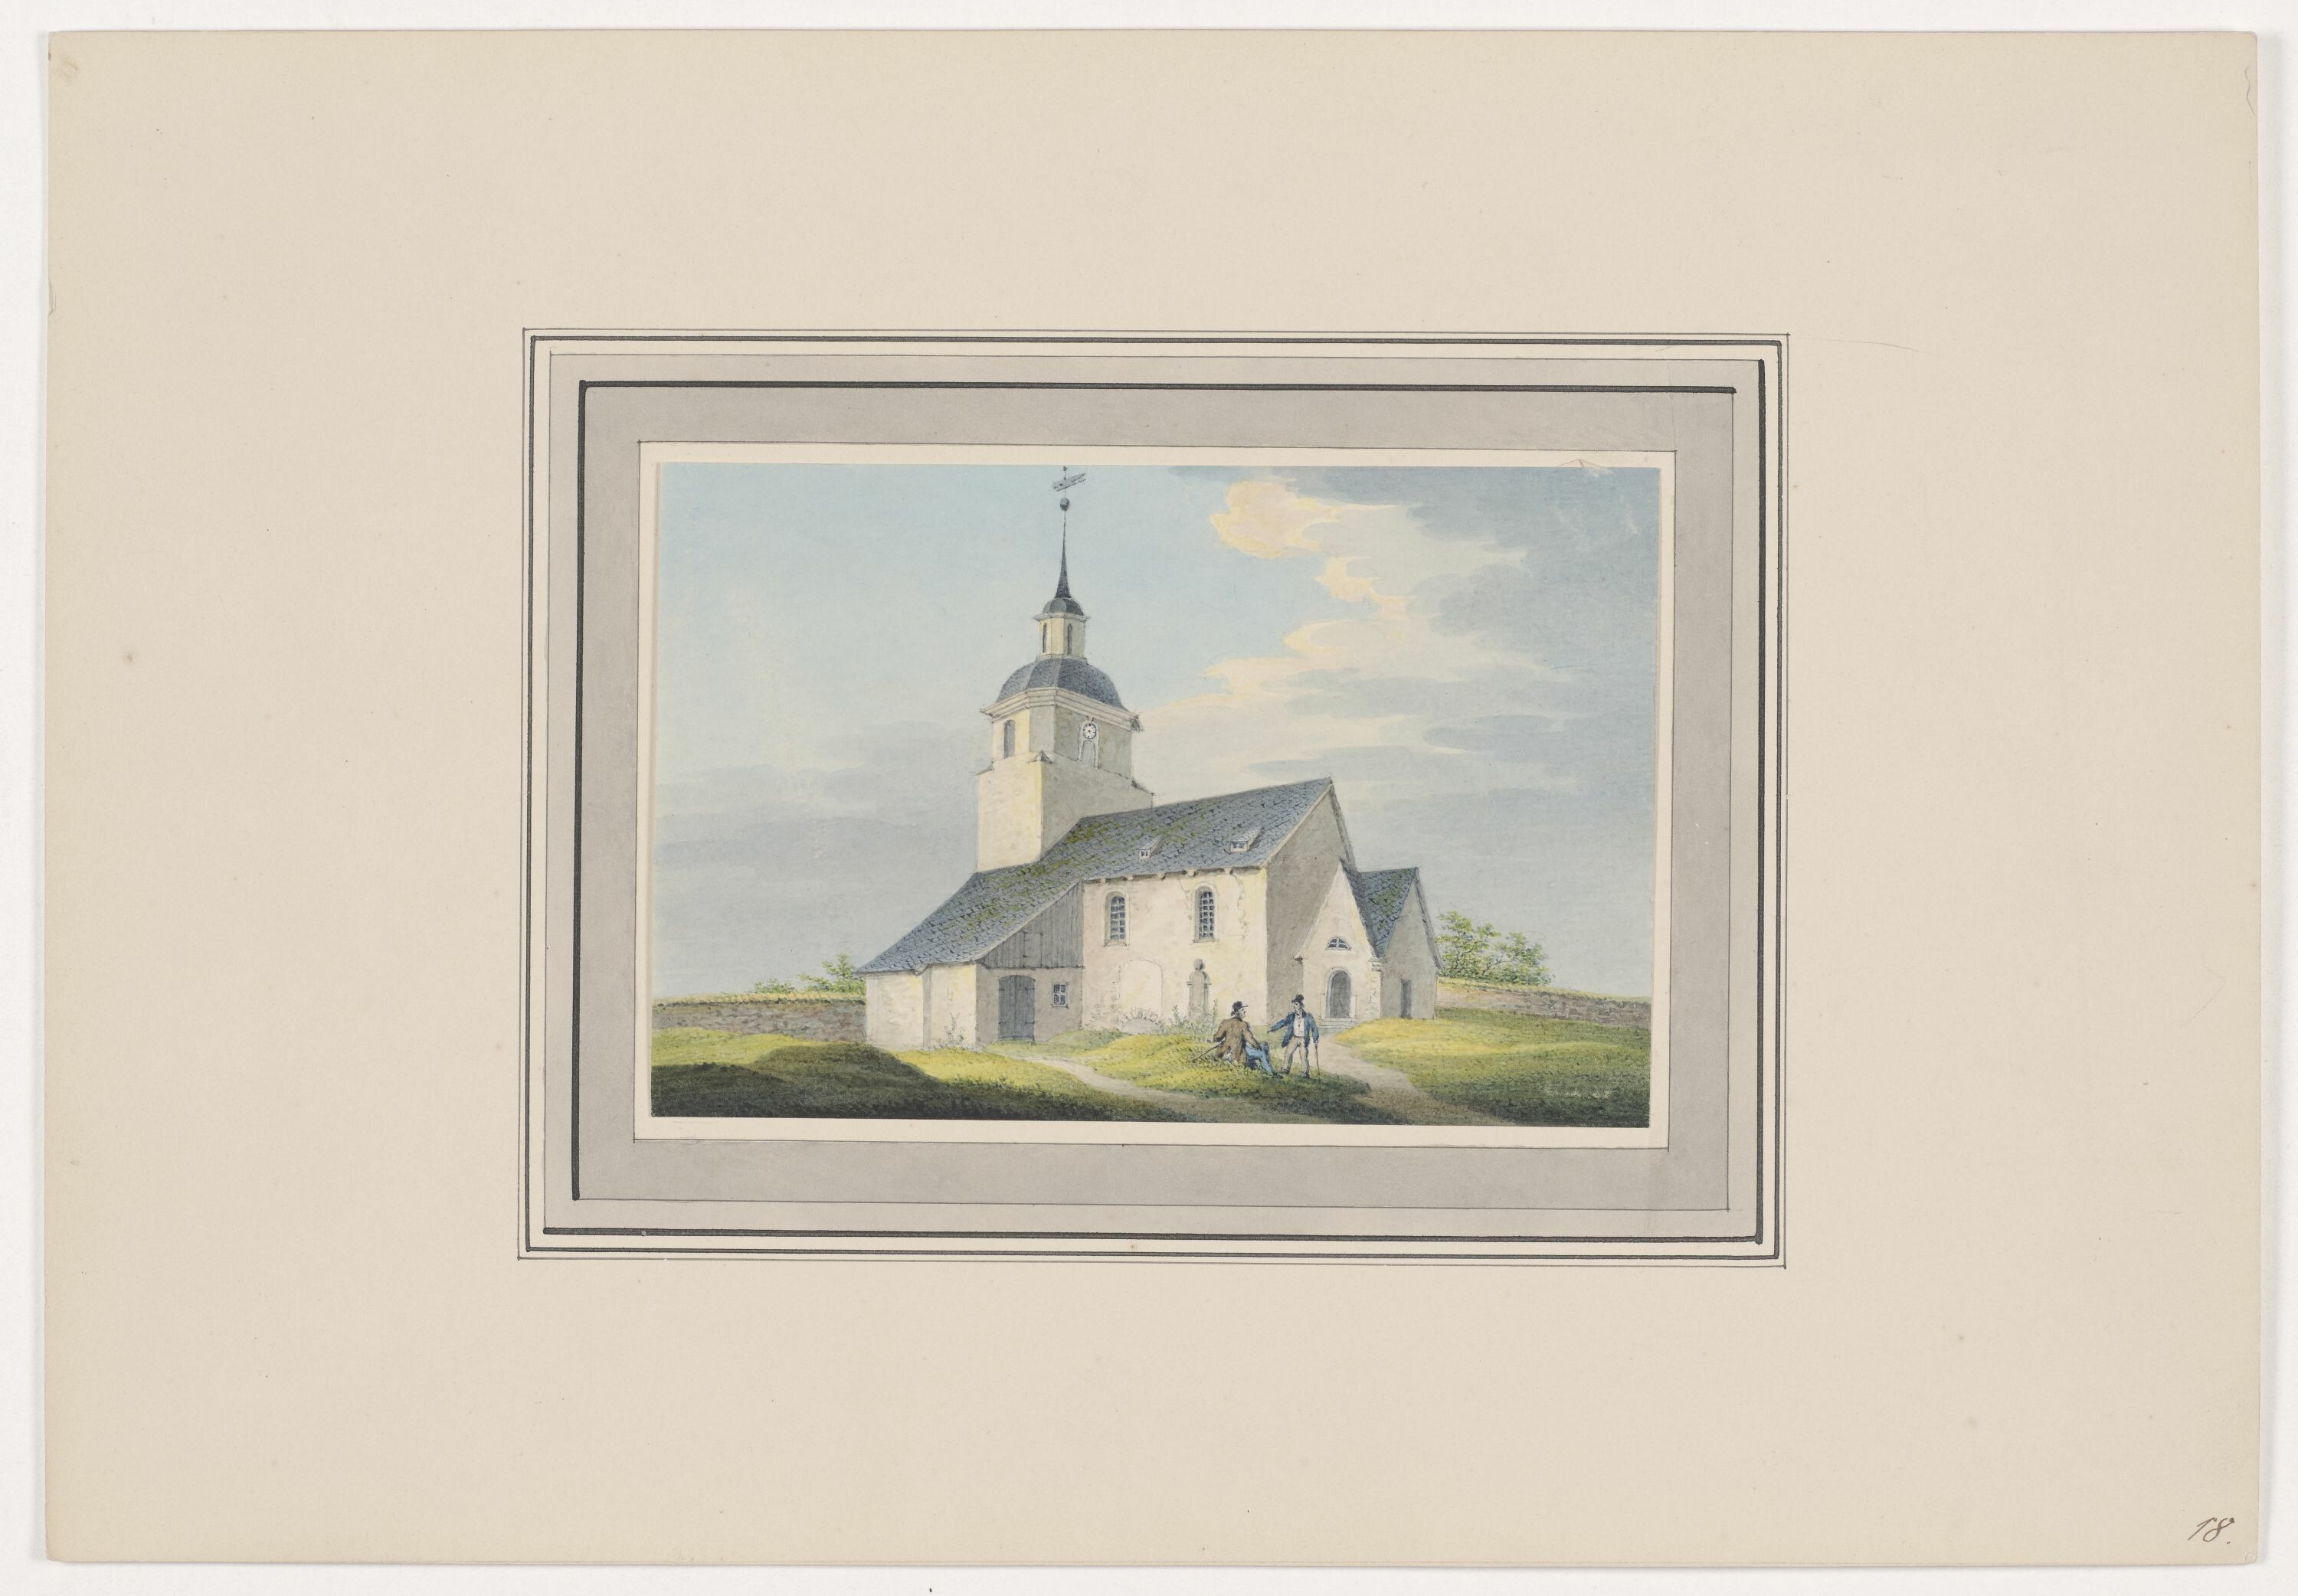 Kirche zu Ortmannsdorf, aus Mappe: Dorfkirchen der Ephorie Zwickau, Blatt 18 (KUNSTSAMMLUNGEN ZWICKAU Max-Pechstein-Museum RR-F)